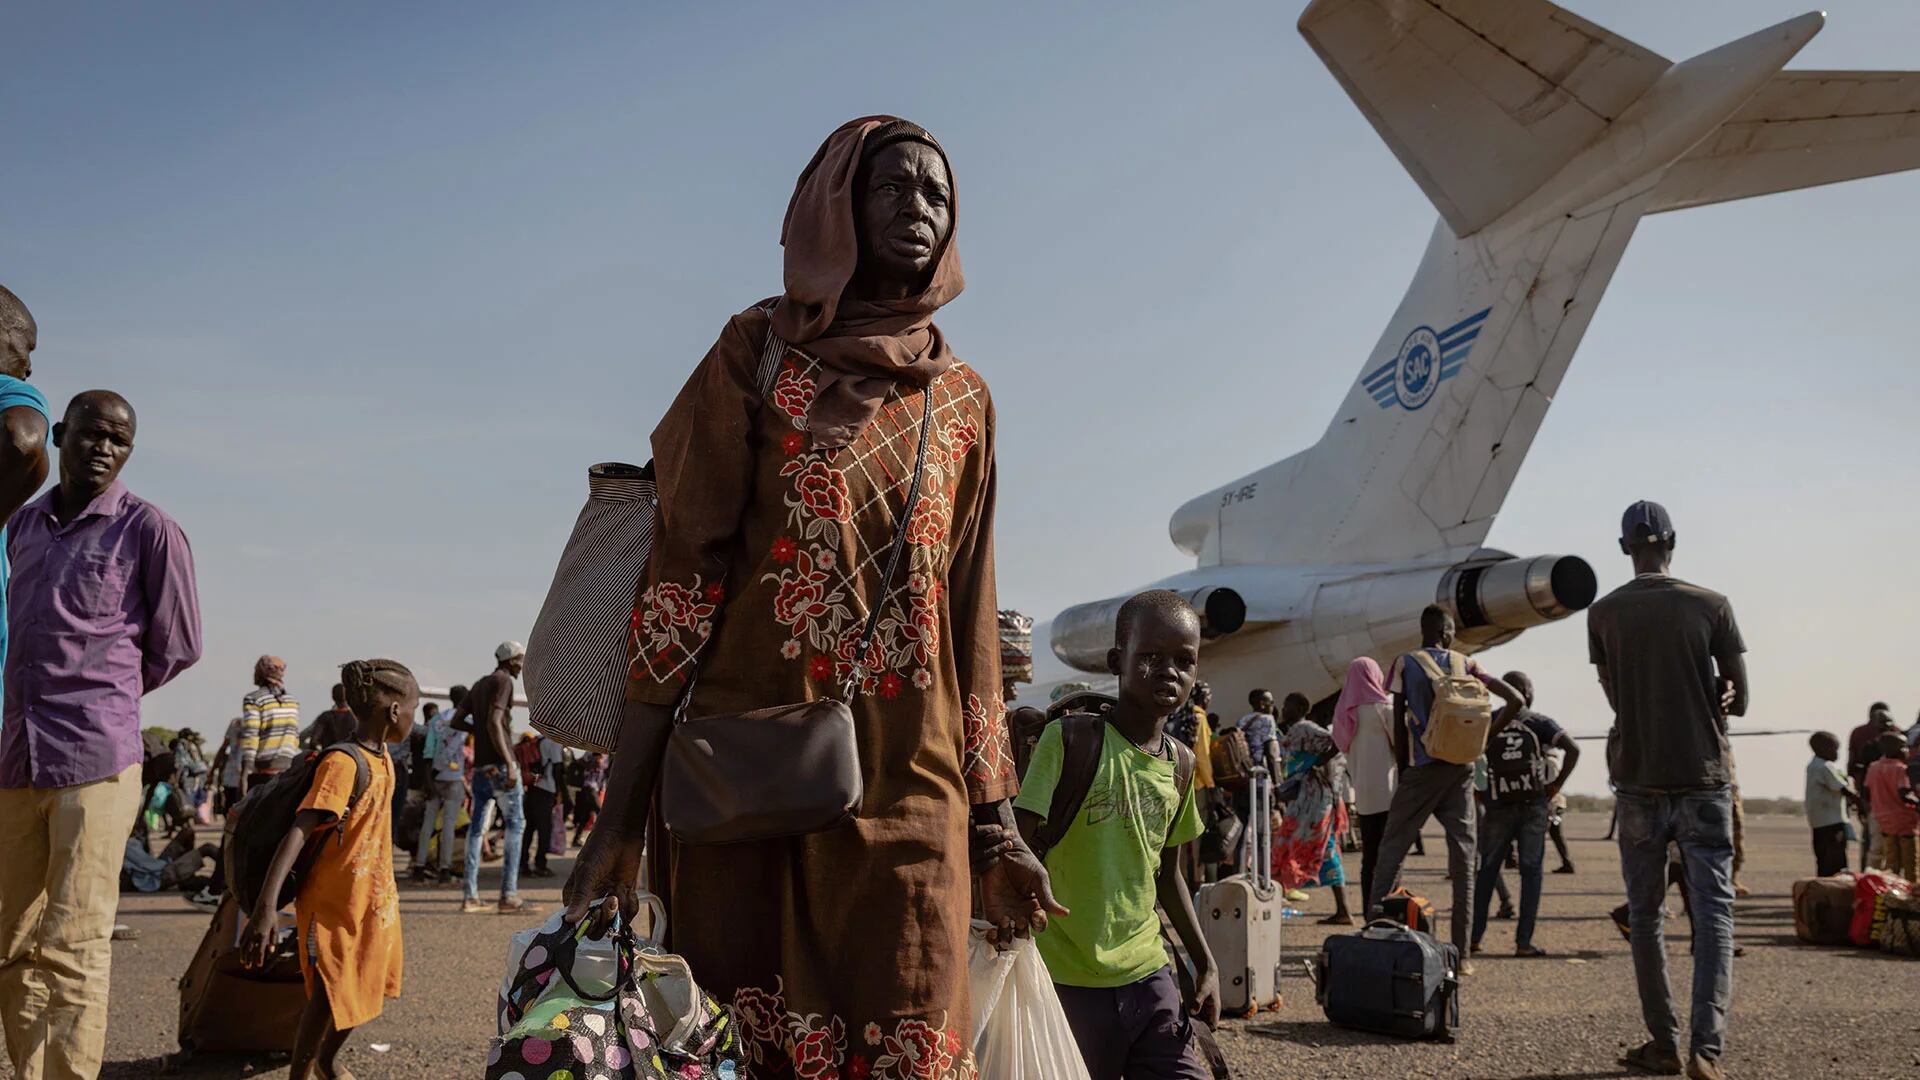 Esperanza lejos del hogar: una campaña de ACNUR para proteger el derecho de las personas refugiadas y desplazadas a buscar asilo